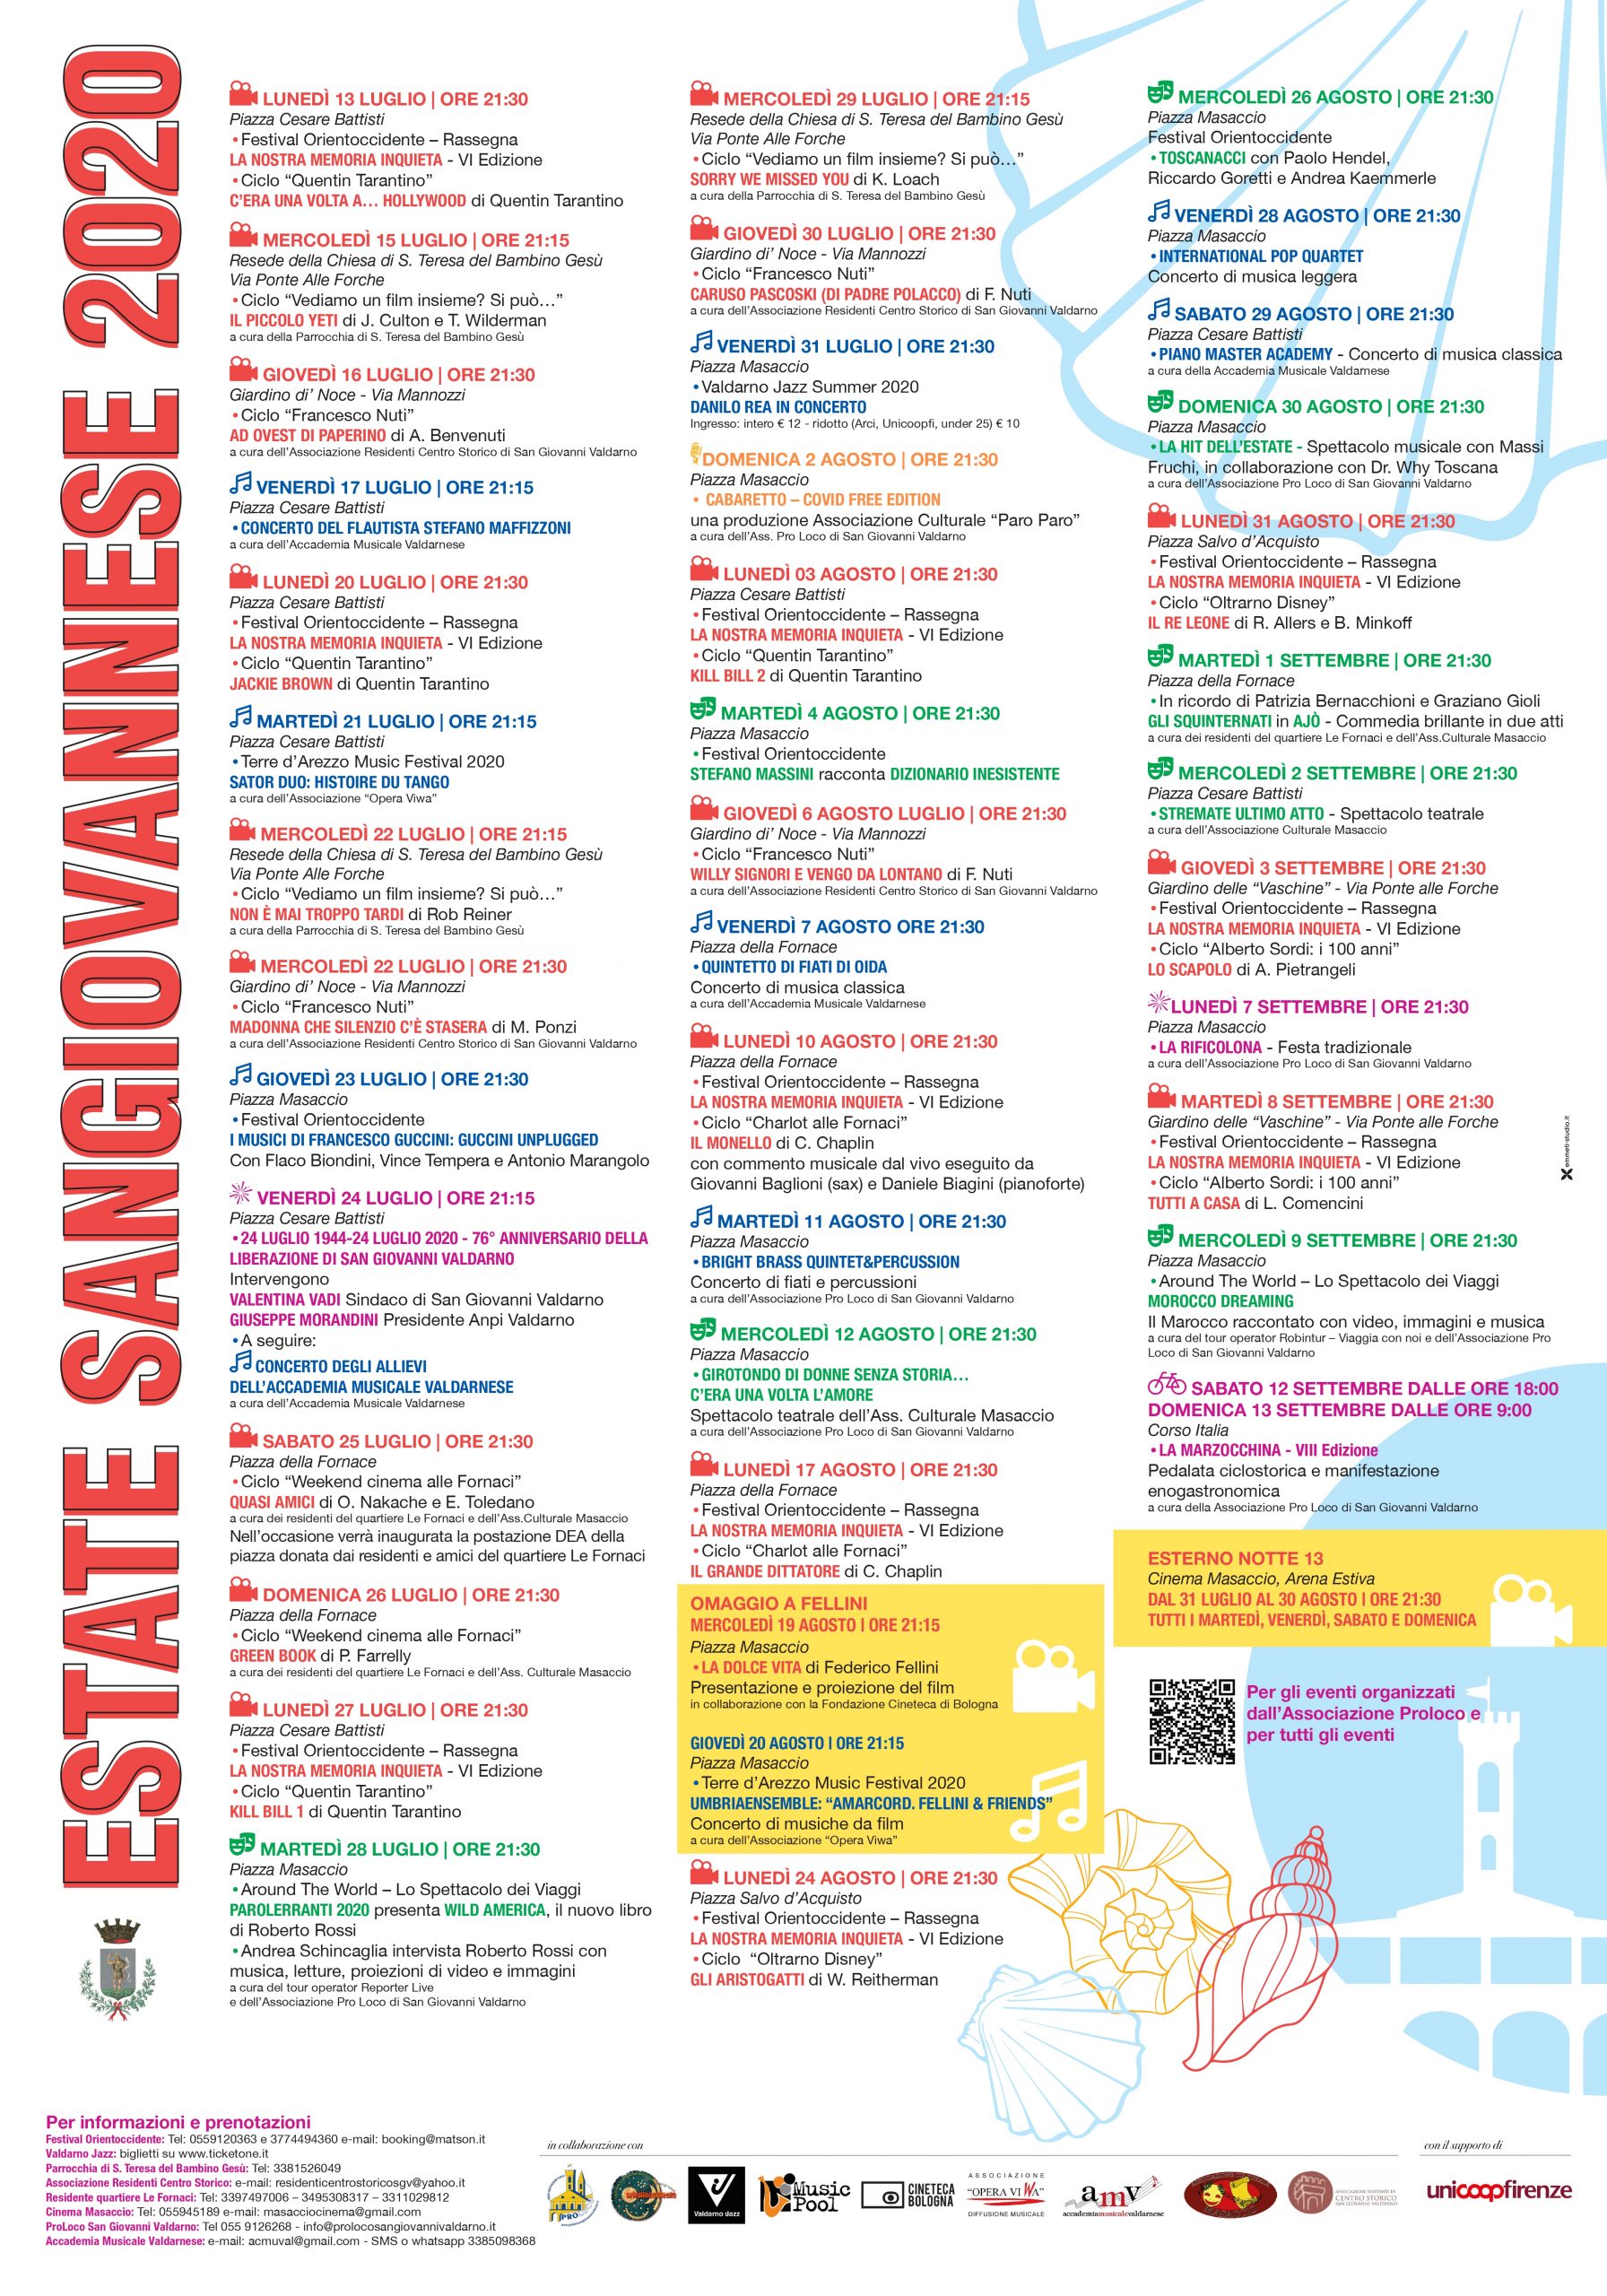 ESTATE SANGIOVANNESE 2020: Cinema, musica, teatro e spettacoli: un’estate di eventi a San Giovanni